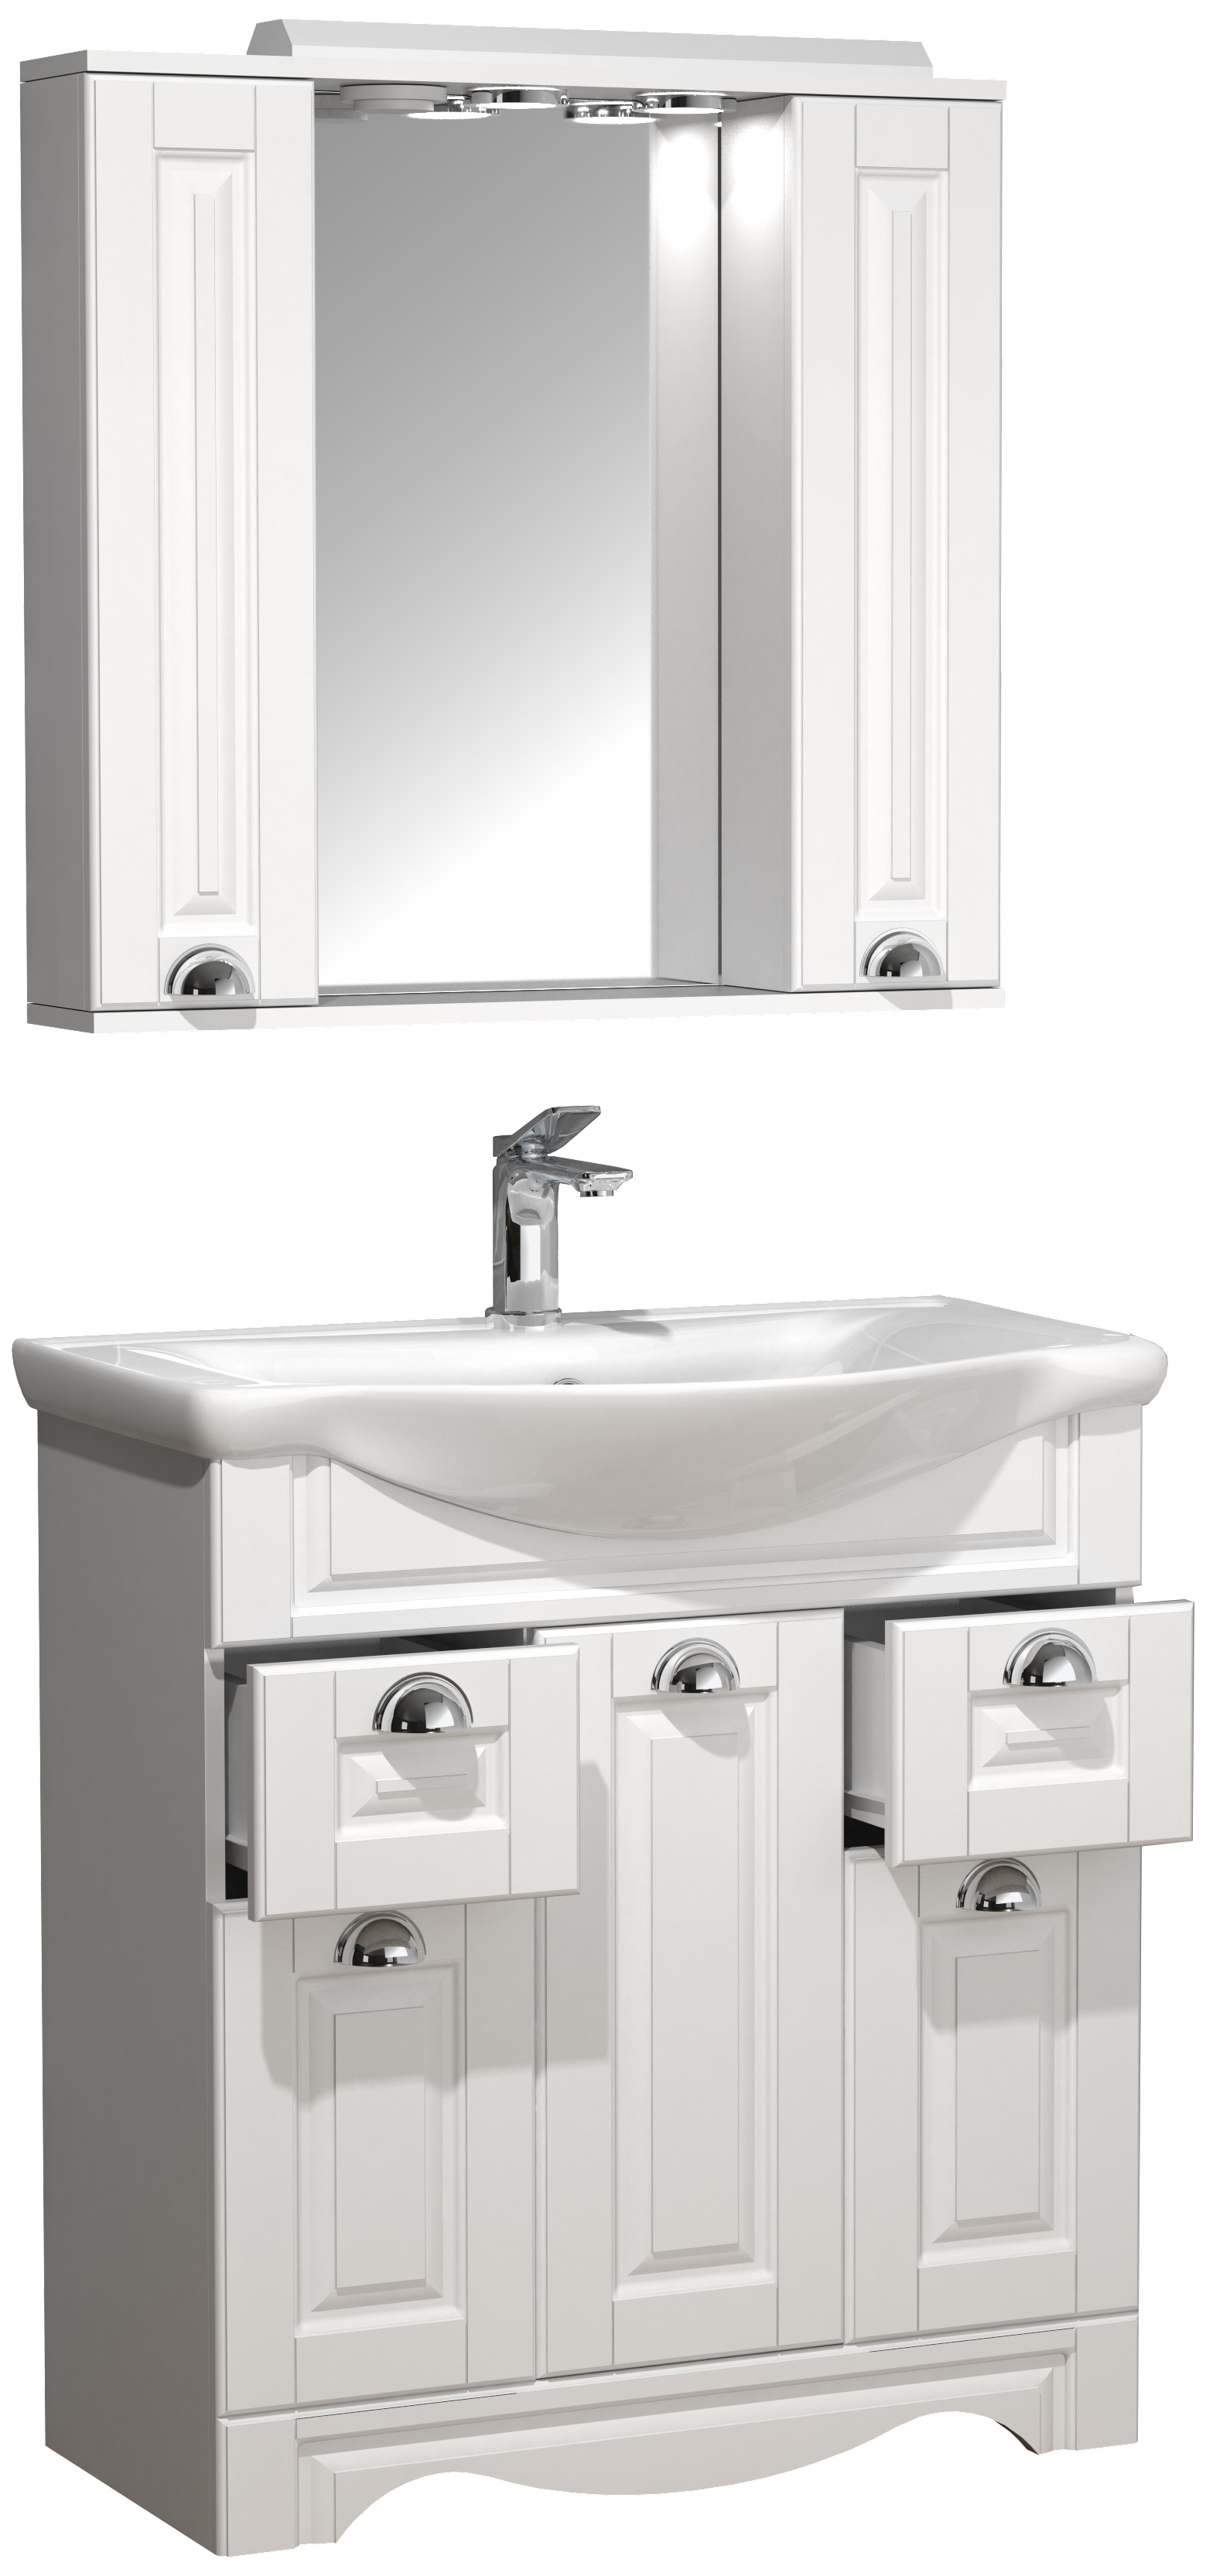 VCM NORDIC Casalo XL 3-delat tvättställ, m. spegelskåp, handfat, 5 dörrar, 2 lådor - vit melamin